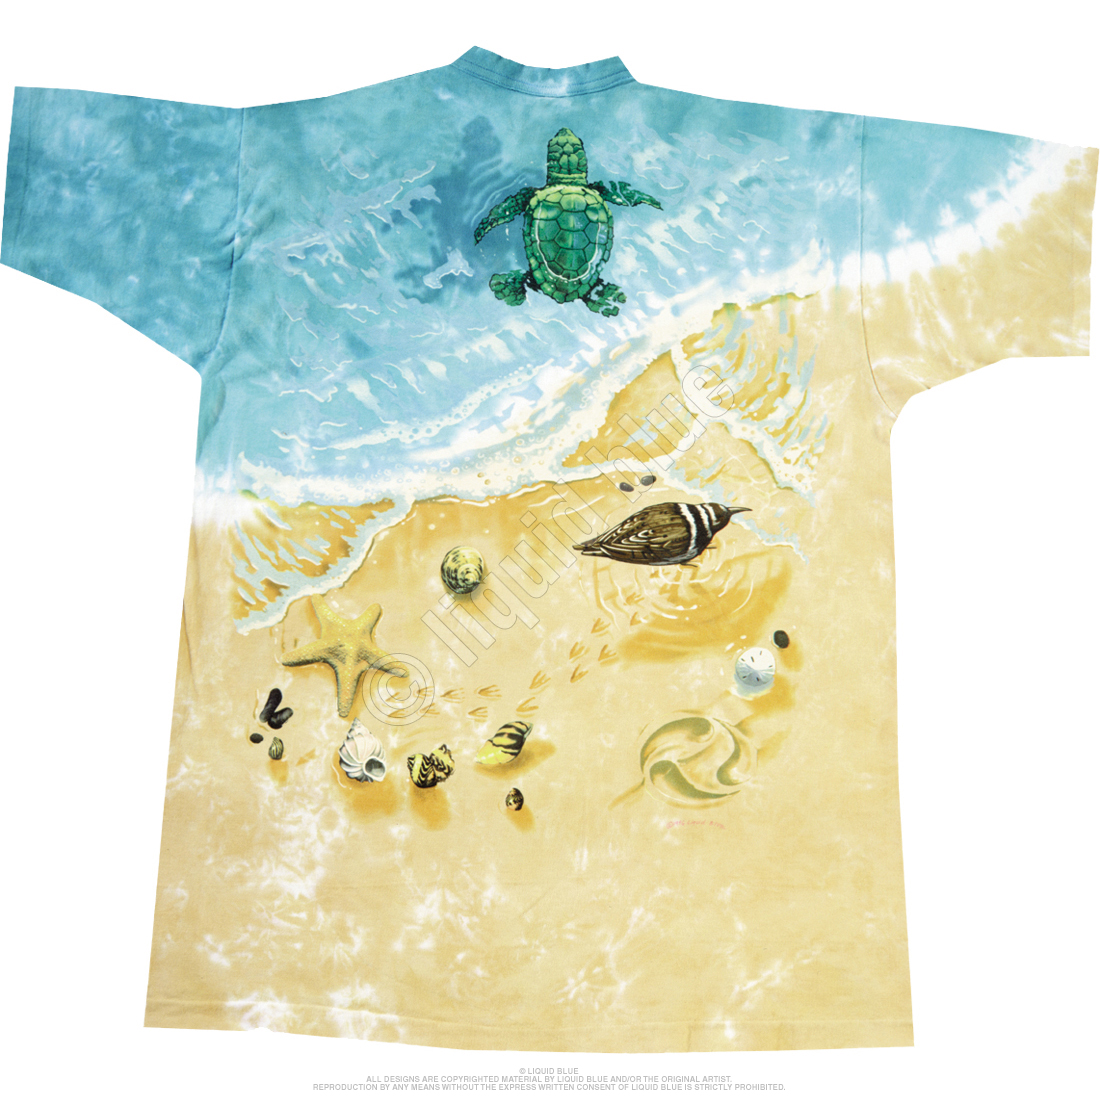 Liquid Blue Sea Turtles Tie-Dye T-Shirt - 3XL